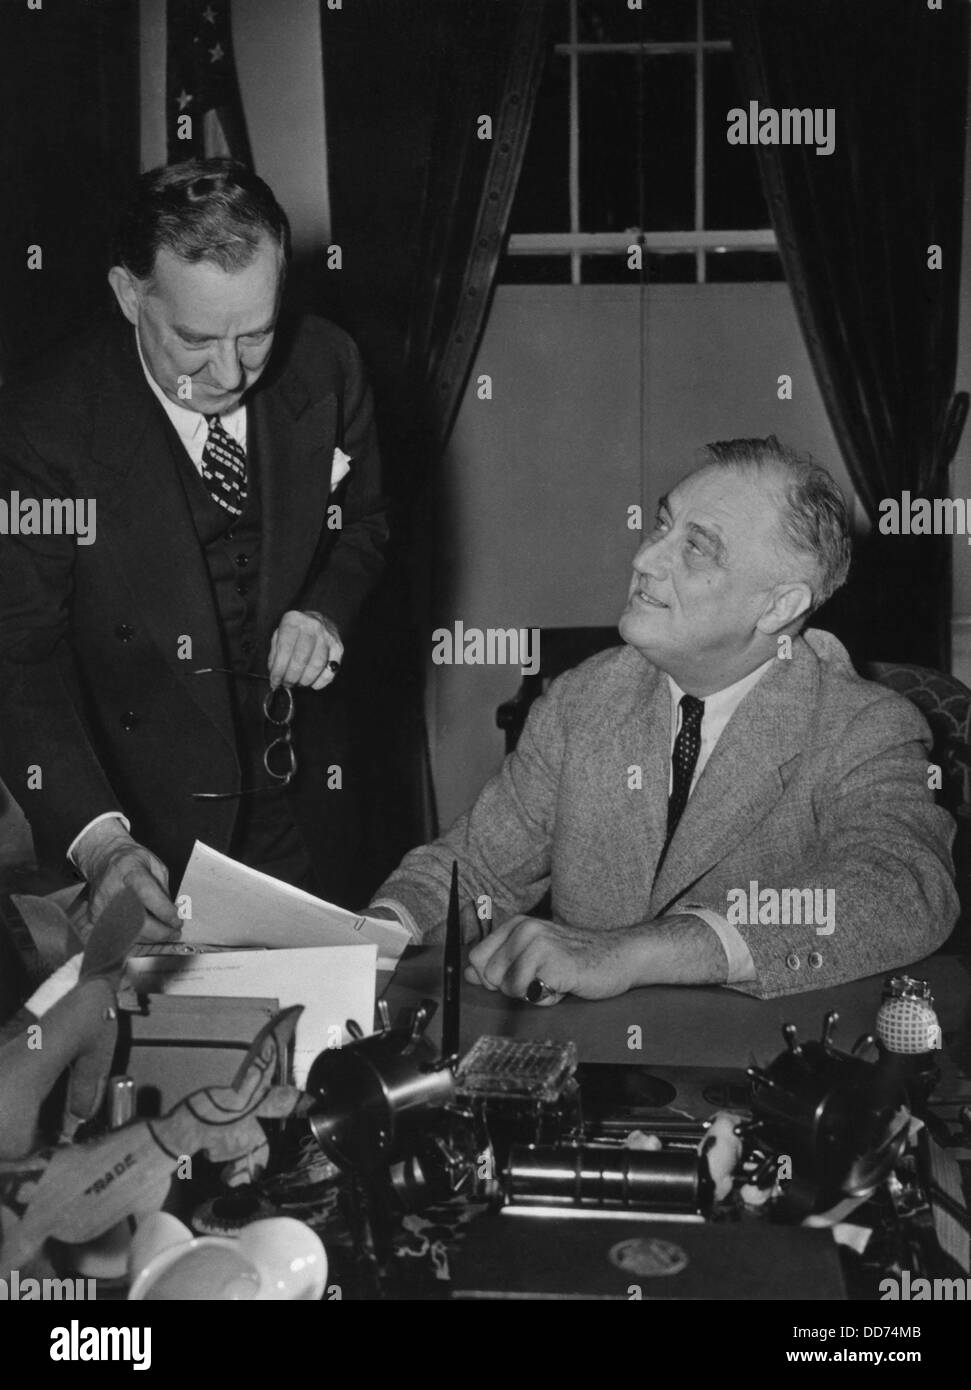 Präsident Franklin Roosevelt und Presse Sek. Stephen früh. 18. Januar 1941. Früh war einer der drei weiße Haus Sekretäre, Stockfoto